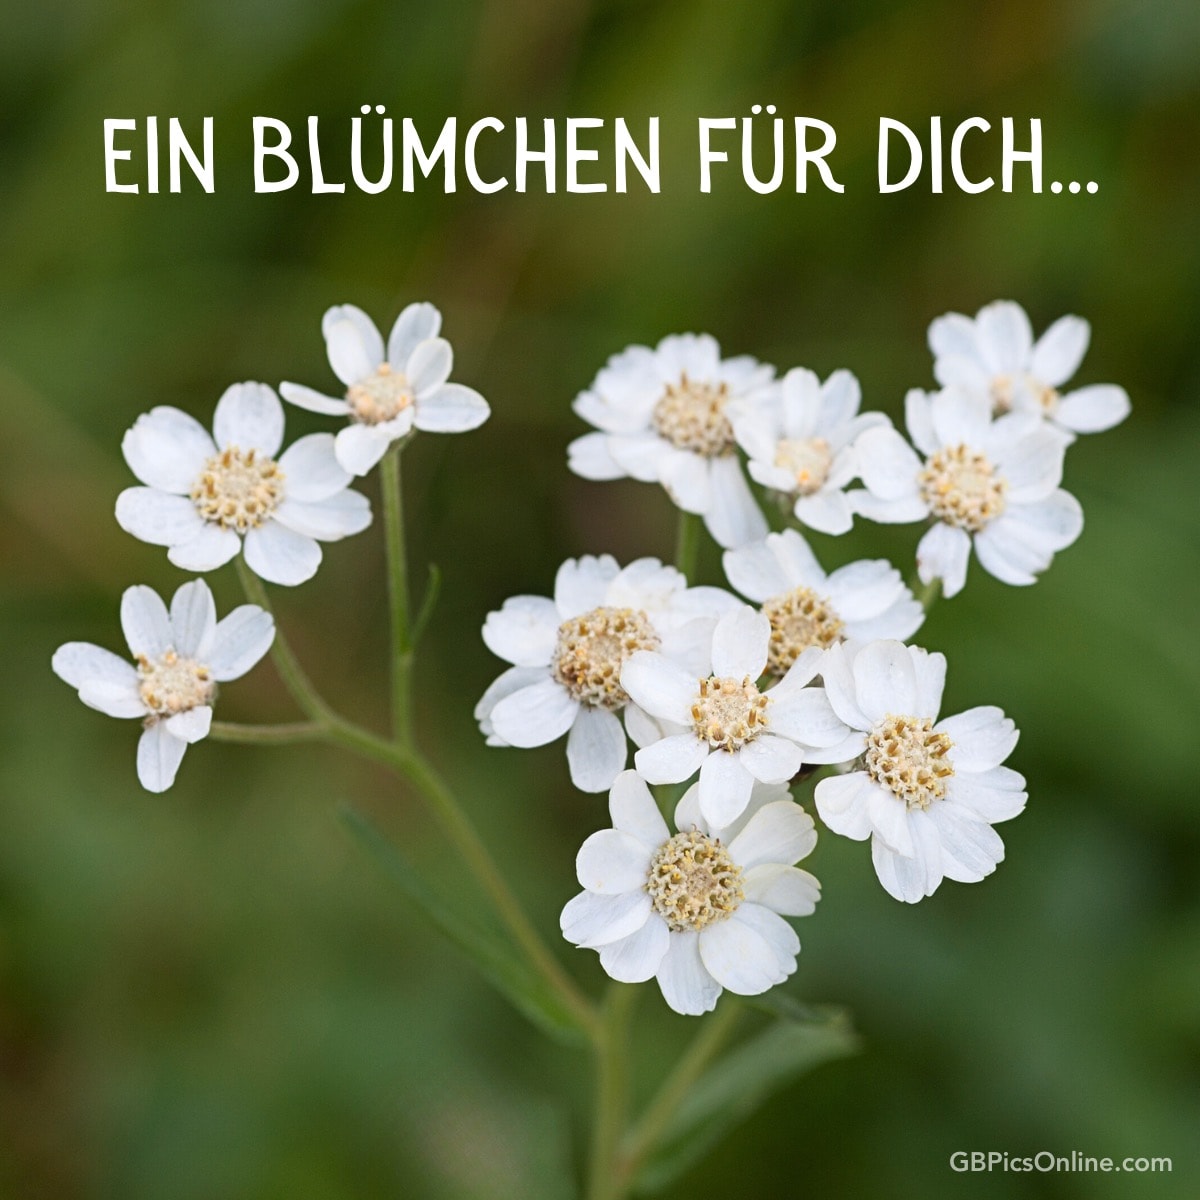 Weiße Blumen mit Text „Ein Blümchen für dich...“ oben